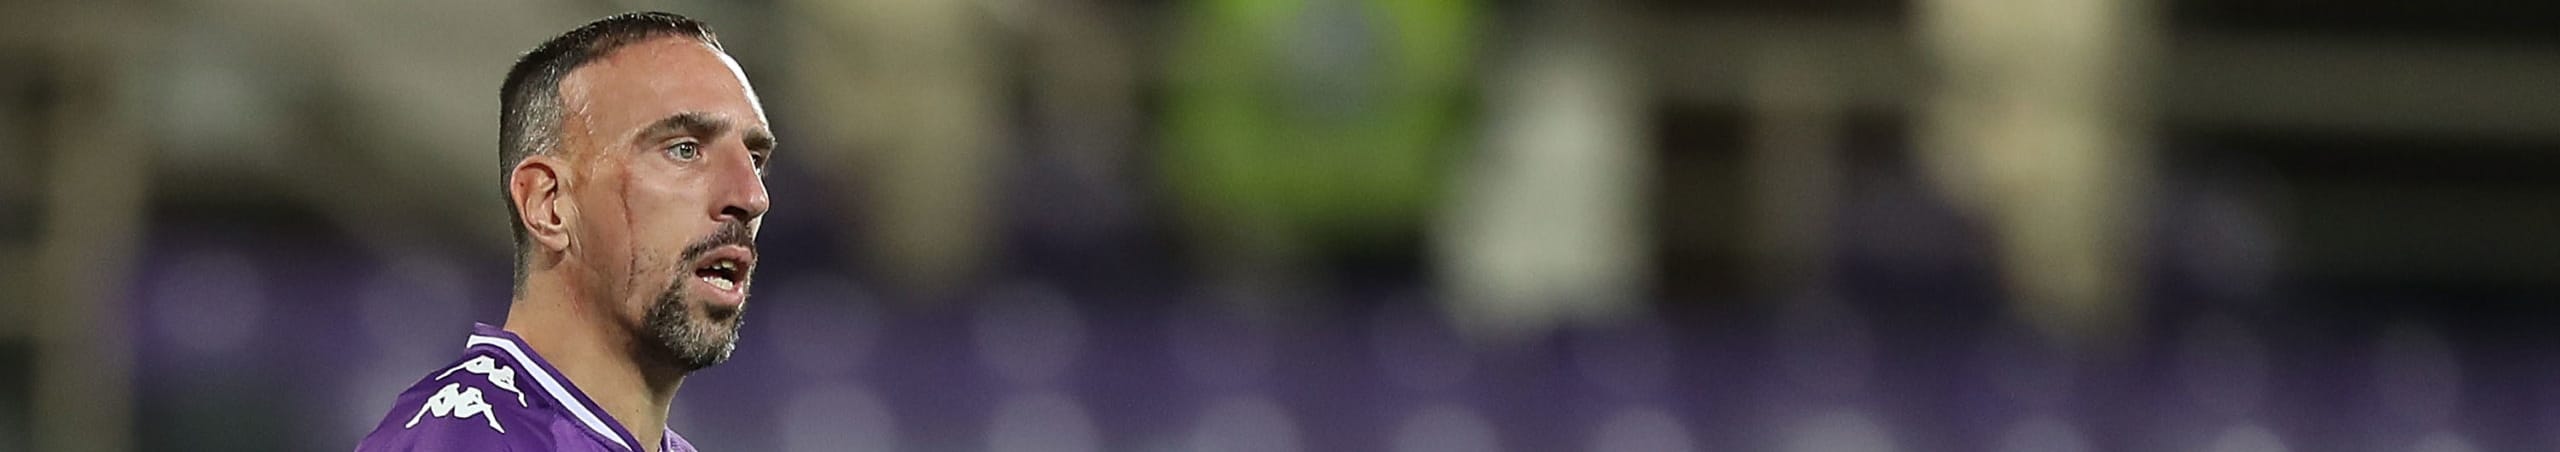 Pronostico Roma-Fiorentina: Fonseca con i titolari, Iachini ritrova Ribery - le ultimissime